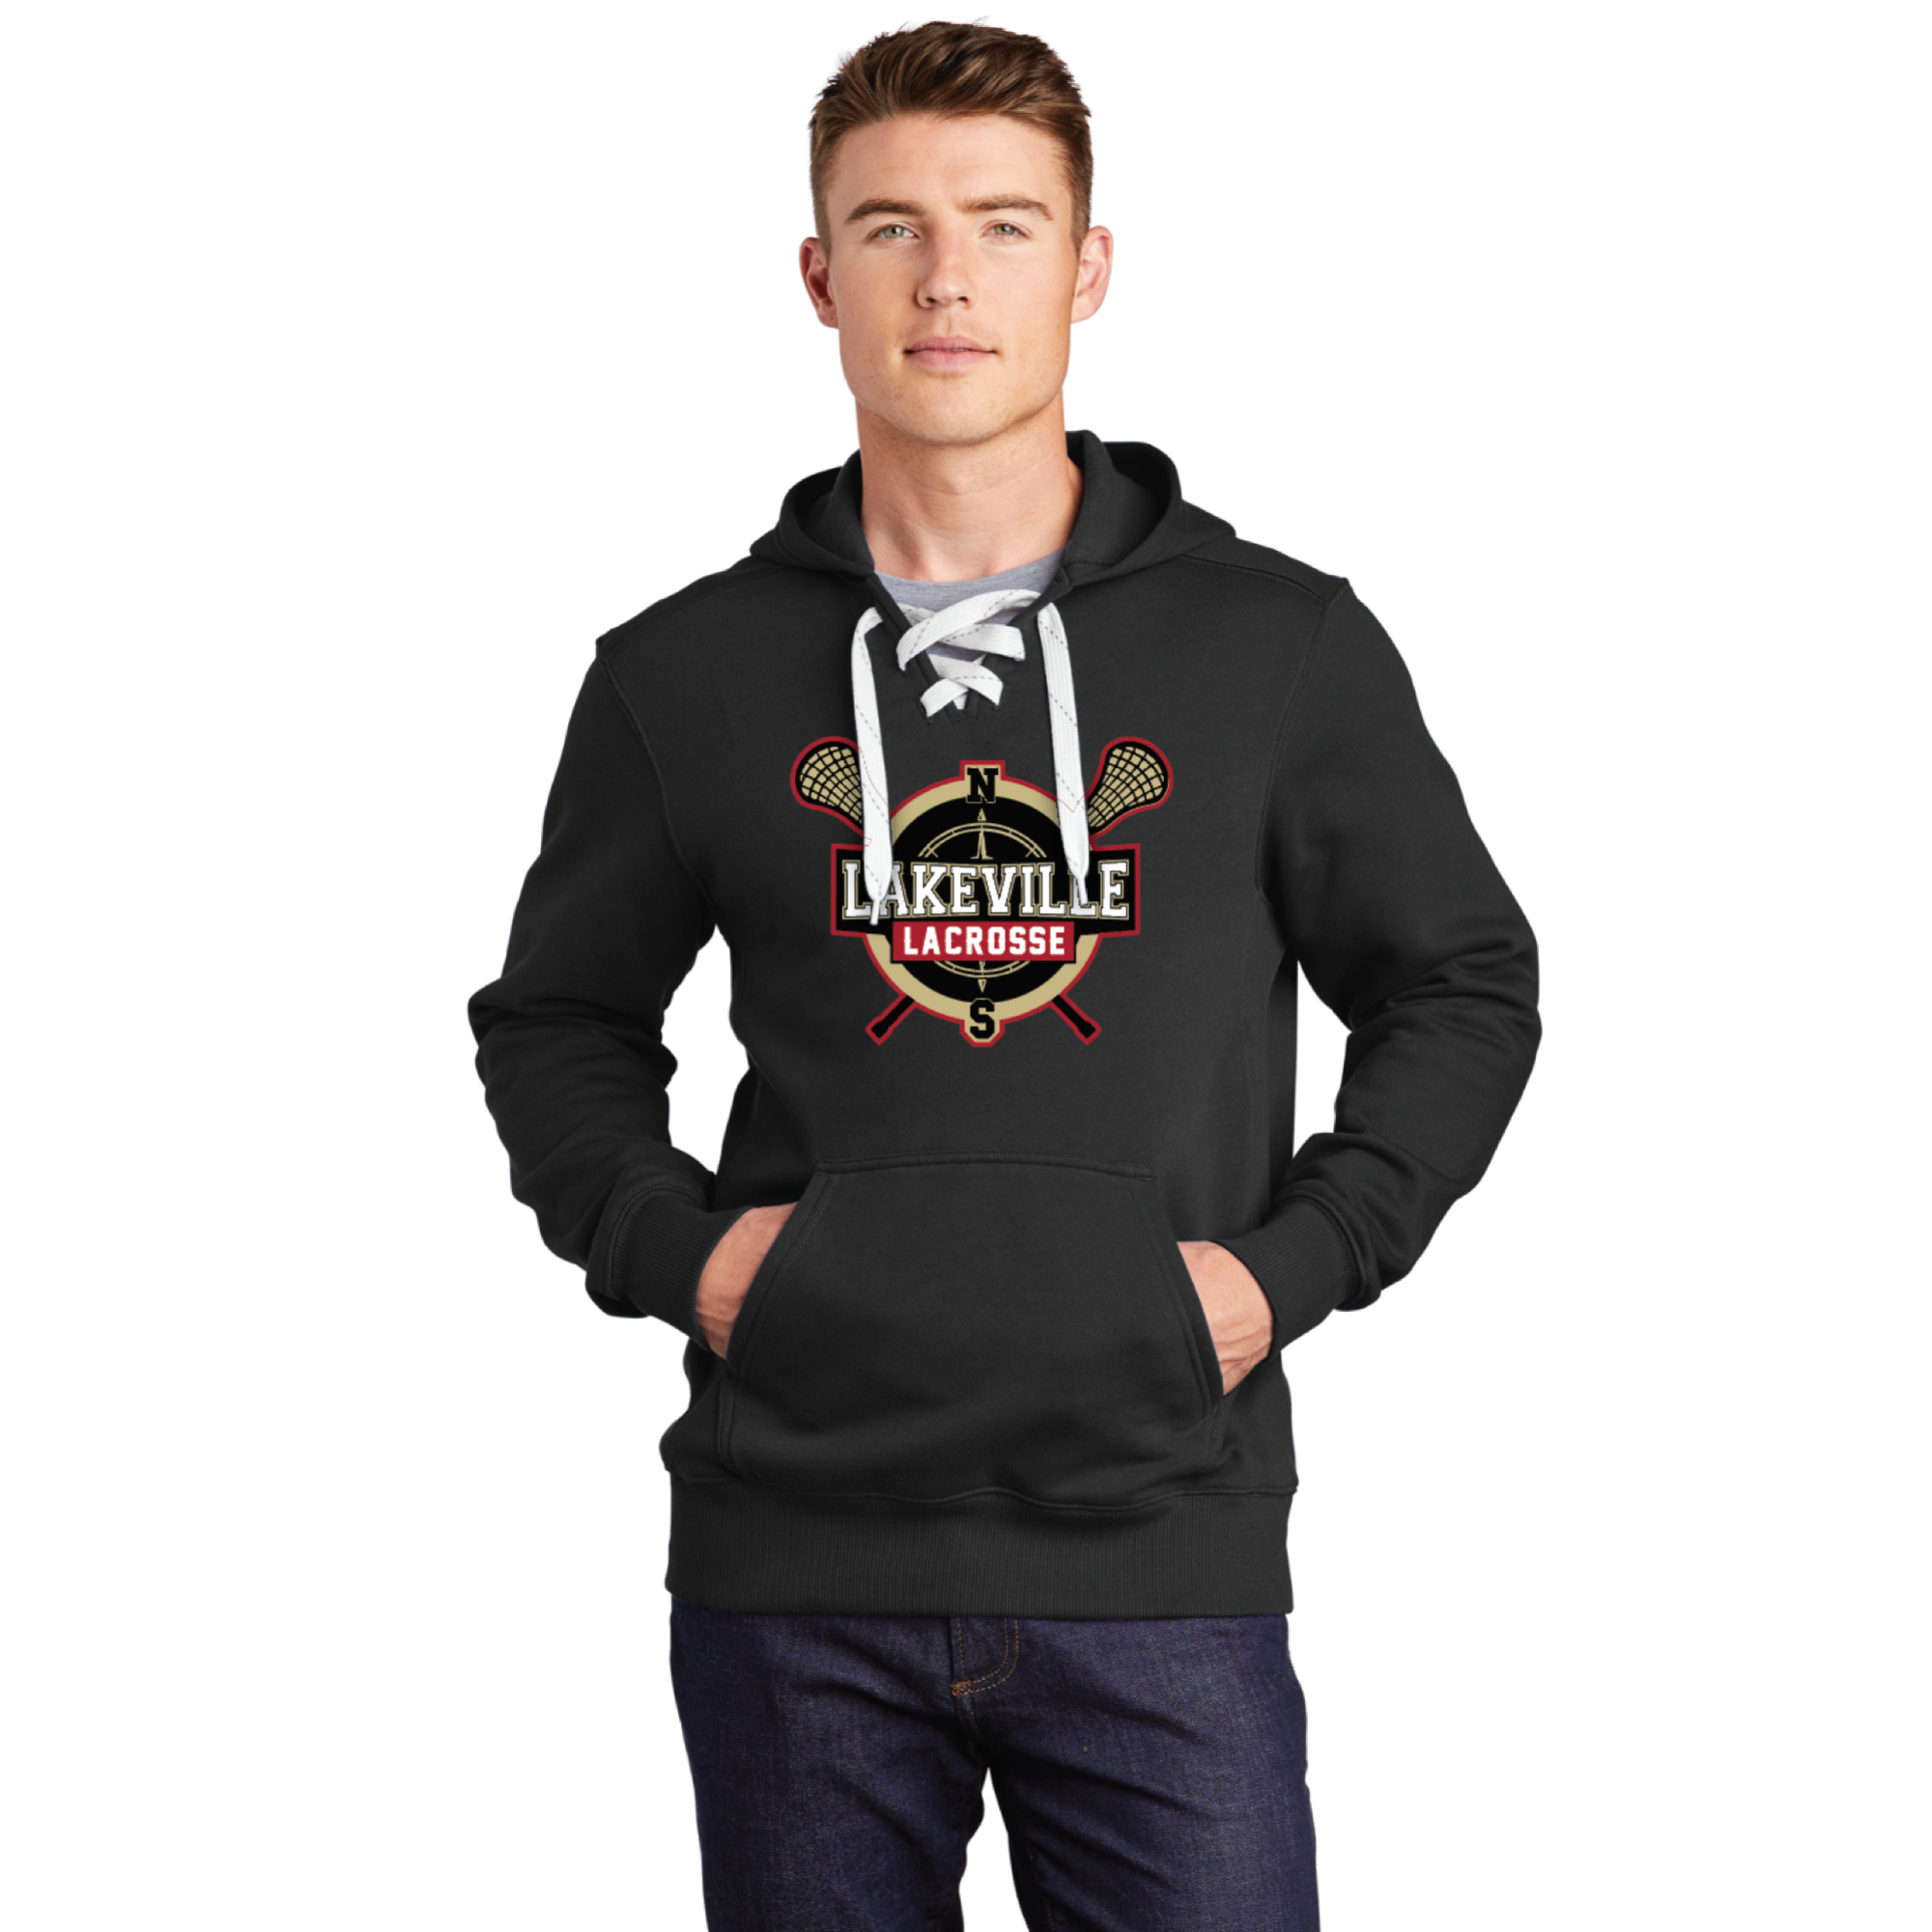 Lakeville Lacrosse Adult Sport-Tek (Lace Up Sweatshirt) Black